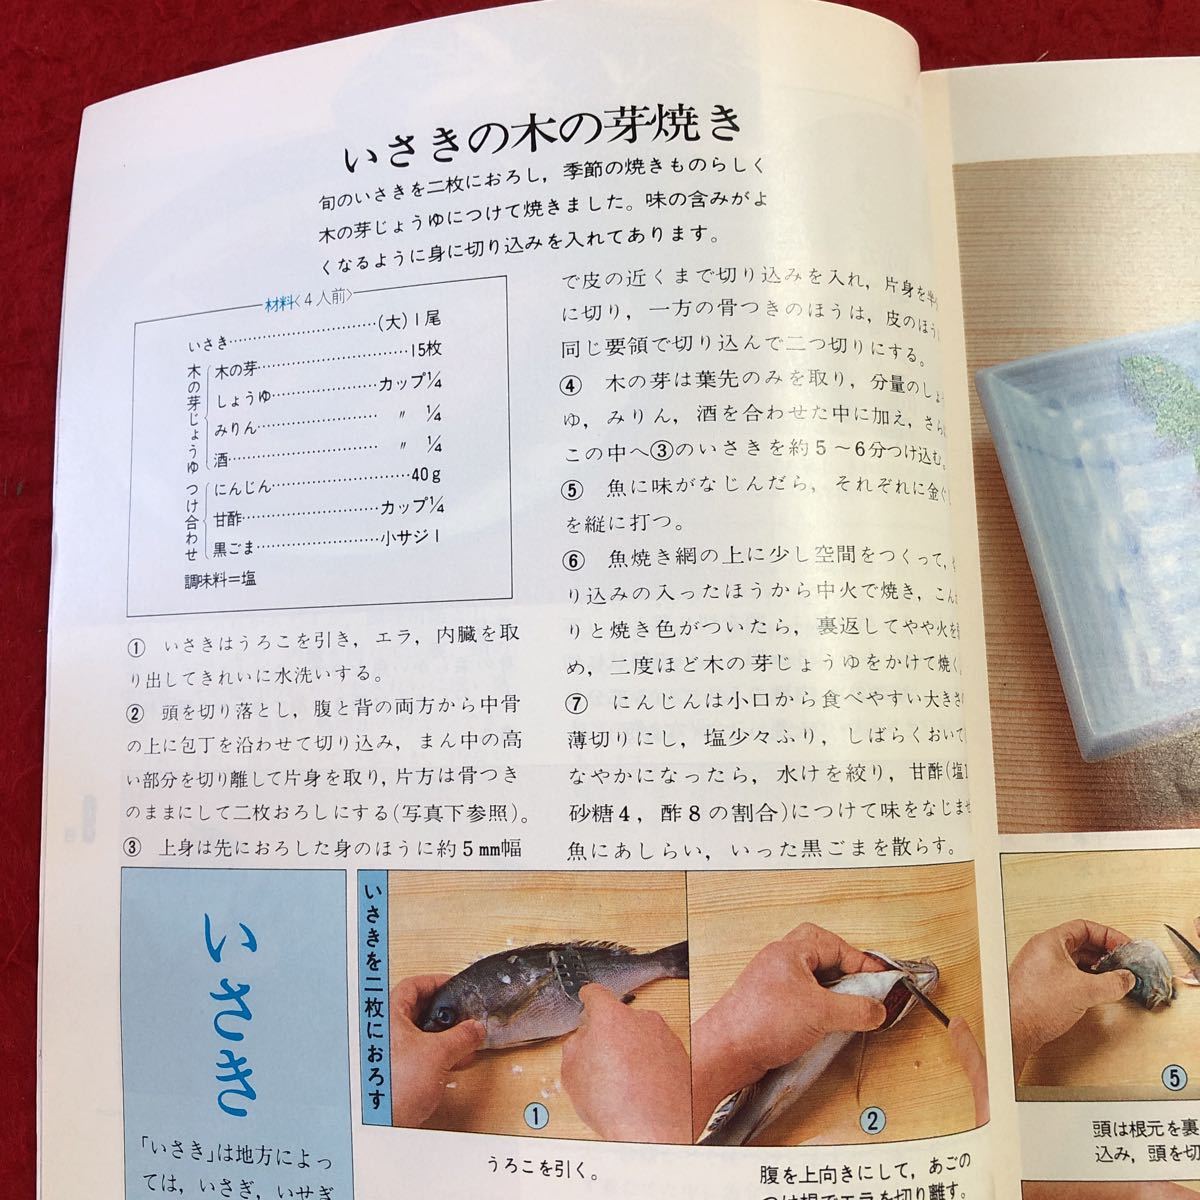 S6f-352 NHK きょうの料理 6月号 魚をおいしく 昭和55年6月1日 発行 日本放送出版協会 雑誌 料理 レシピ 和食 魚料理 とんかつ タイ イサキ_画像5